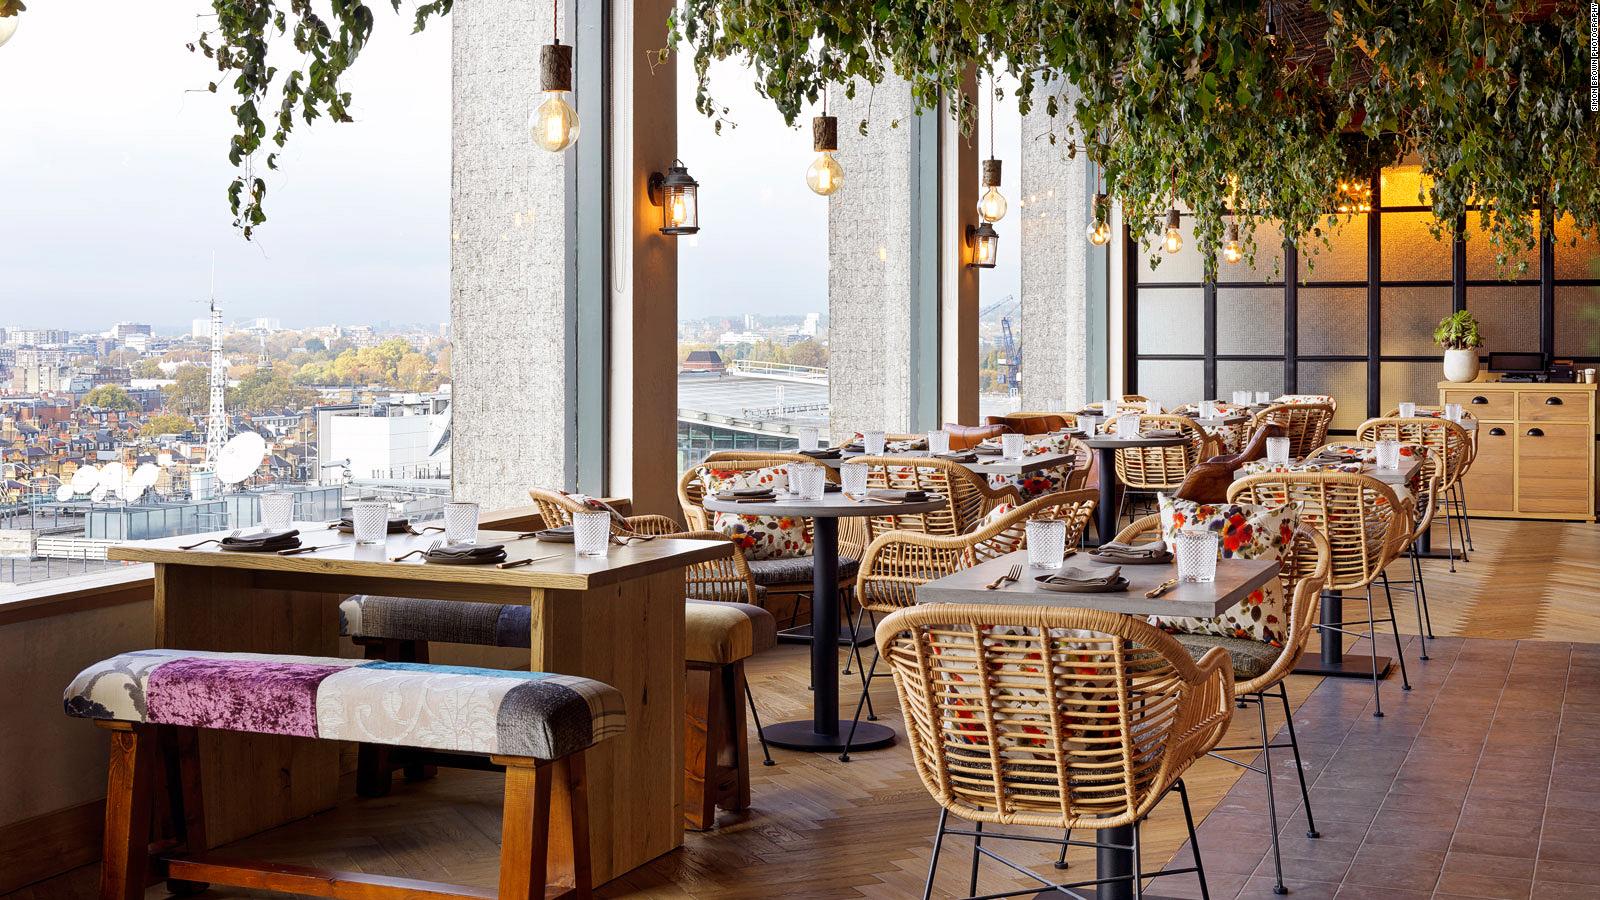 20 Of The World S Best New Restaurants For 2020 Cnn Travel